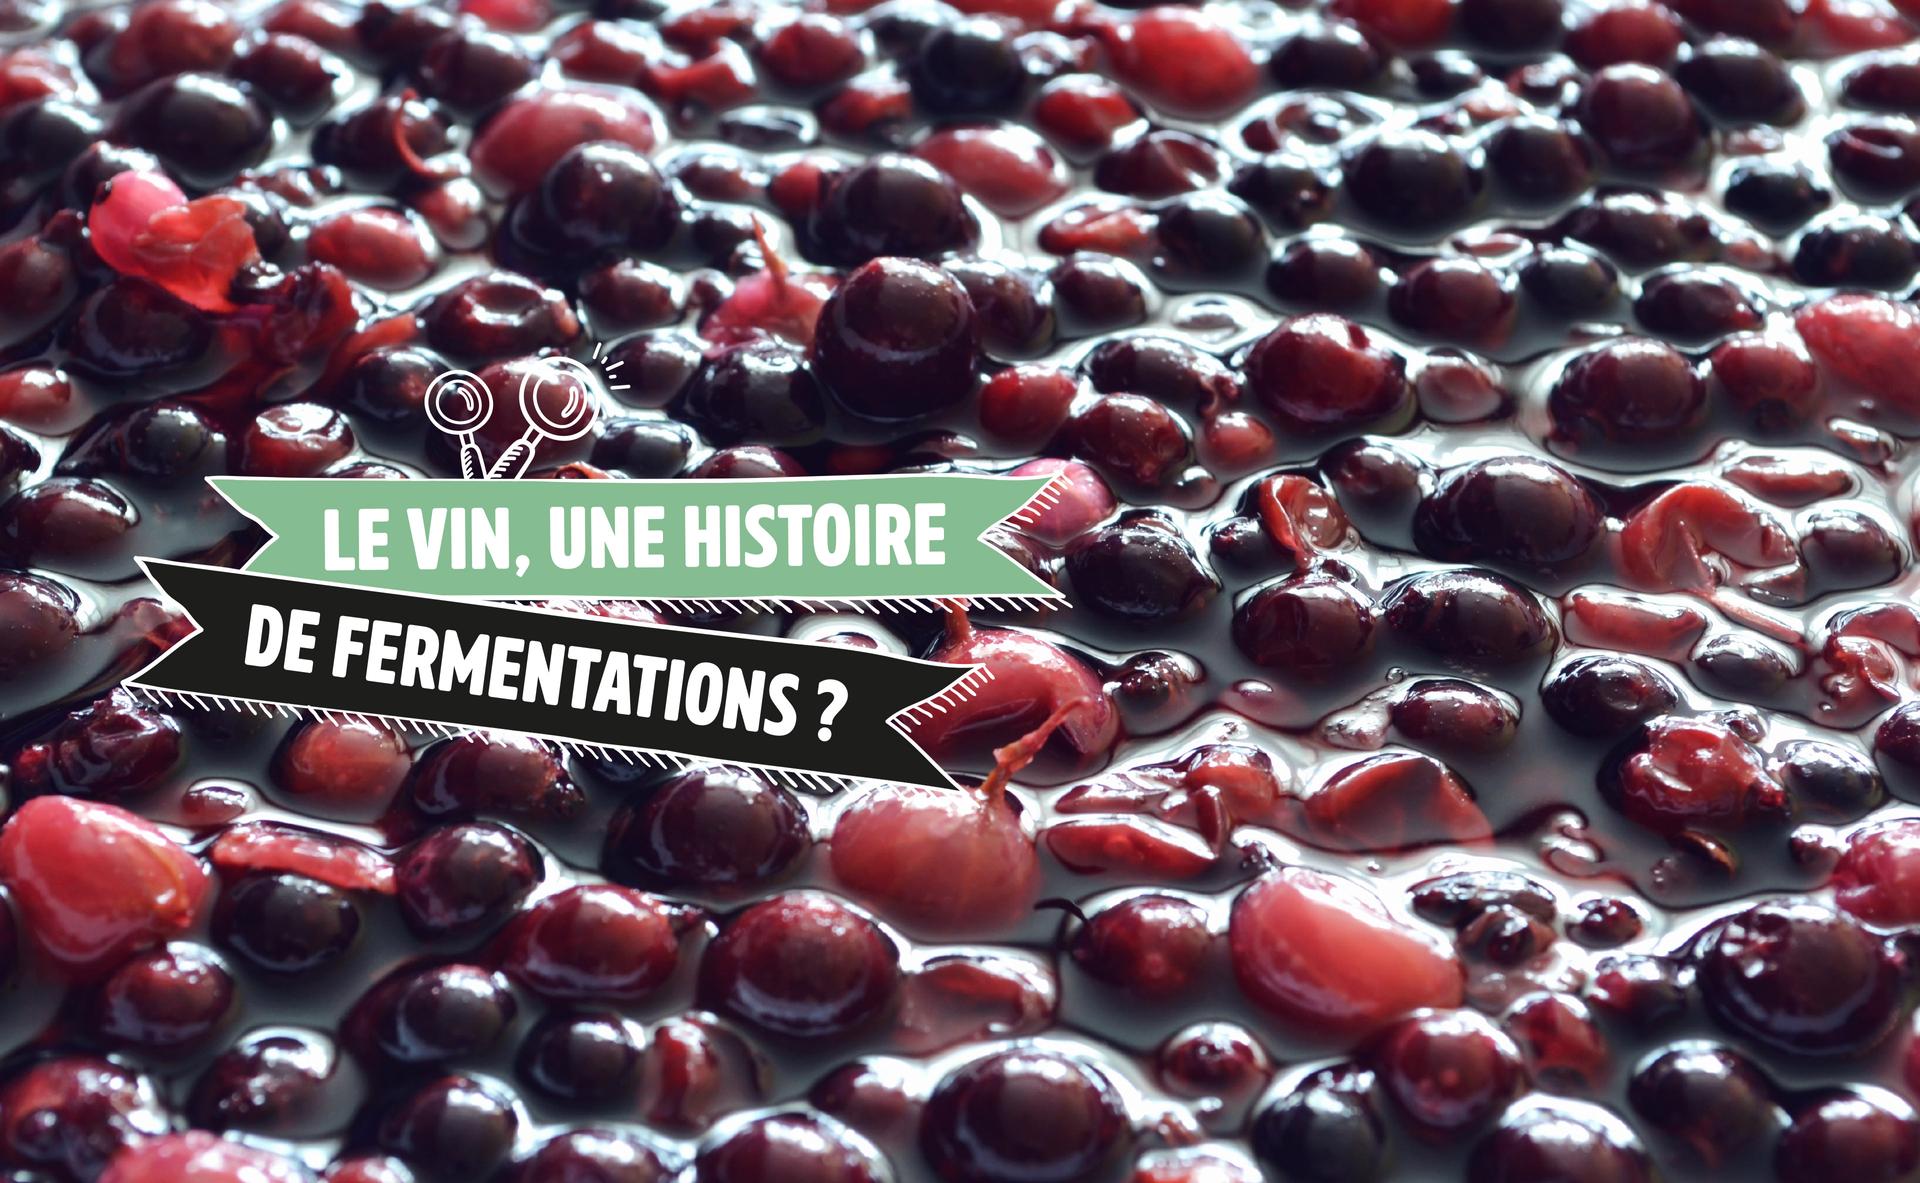 Le vin, une histoire de fermentations